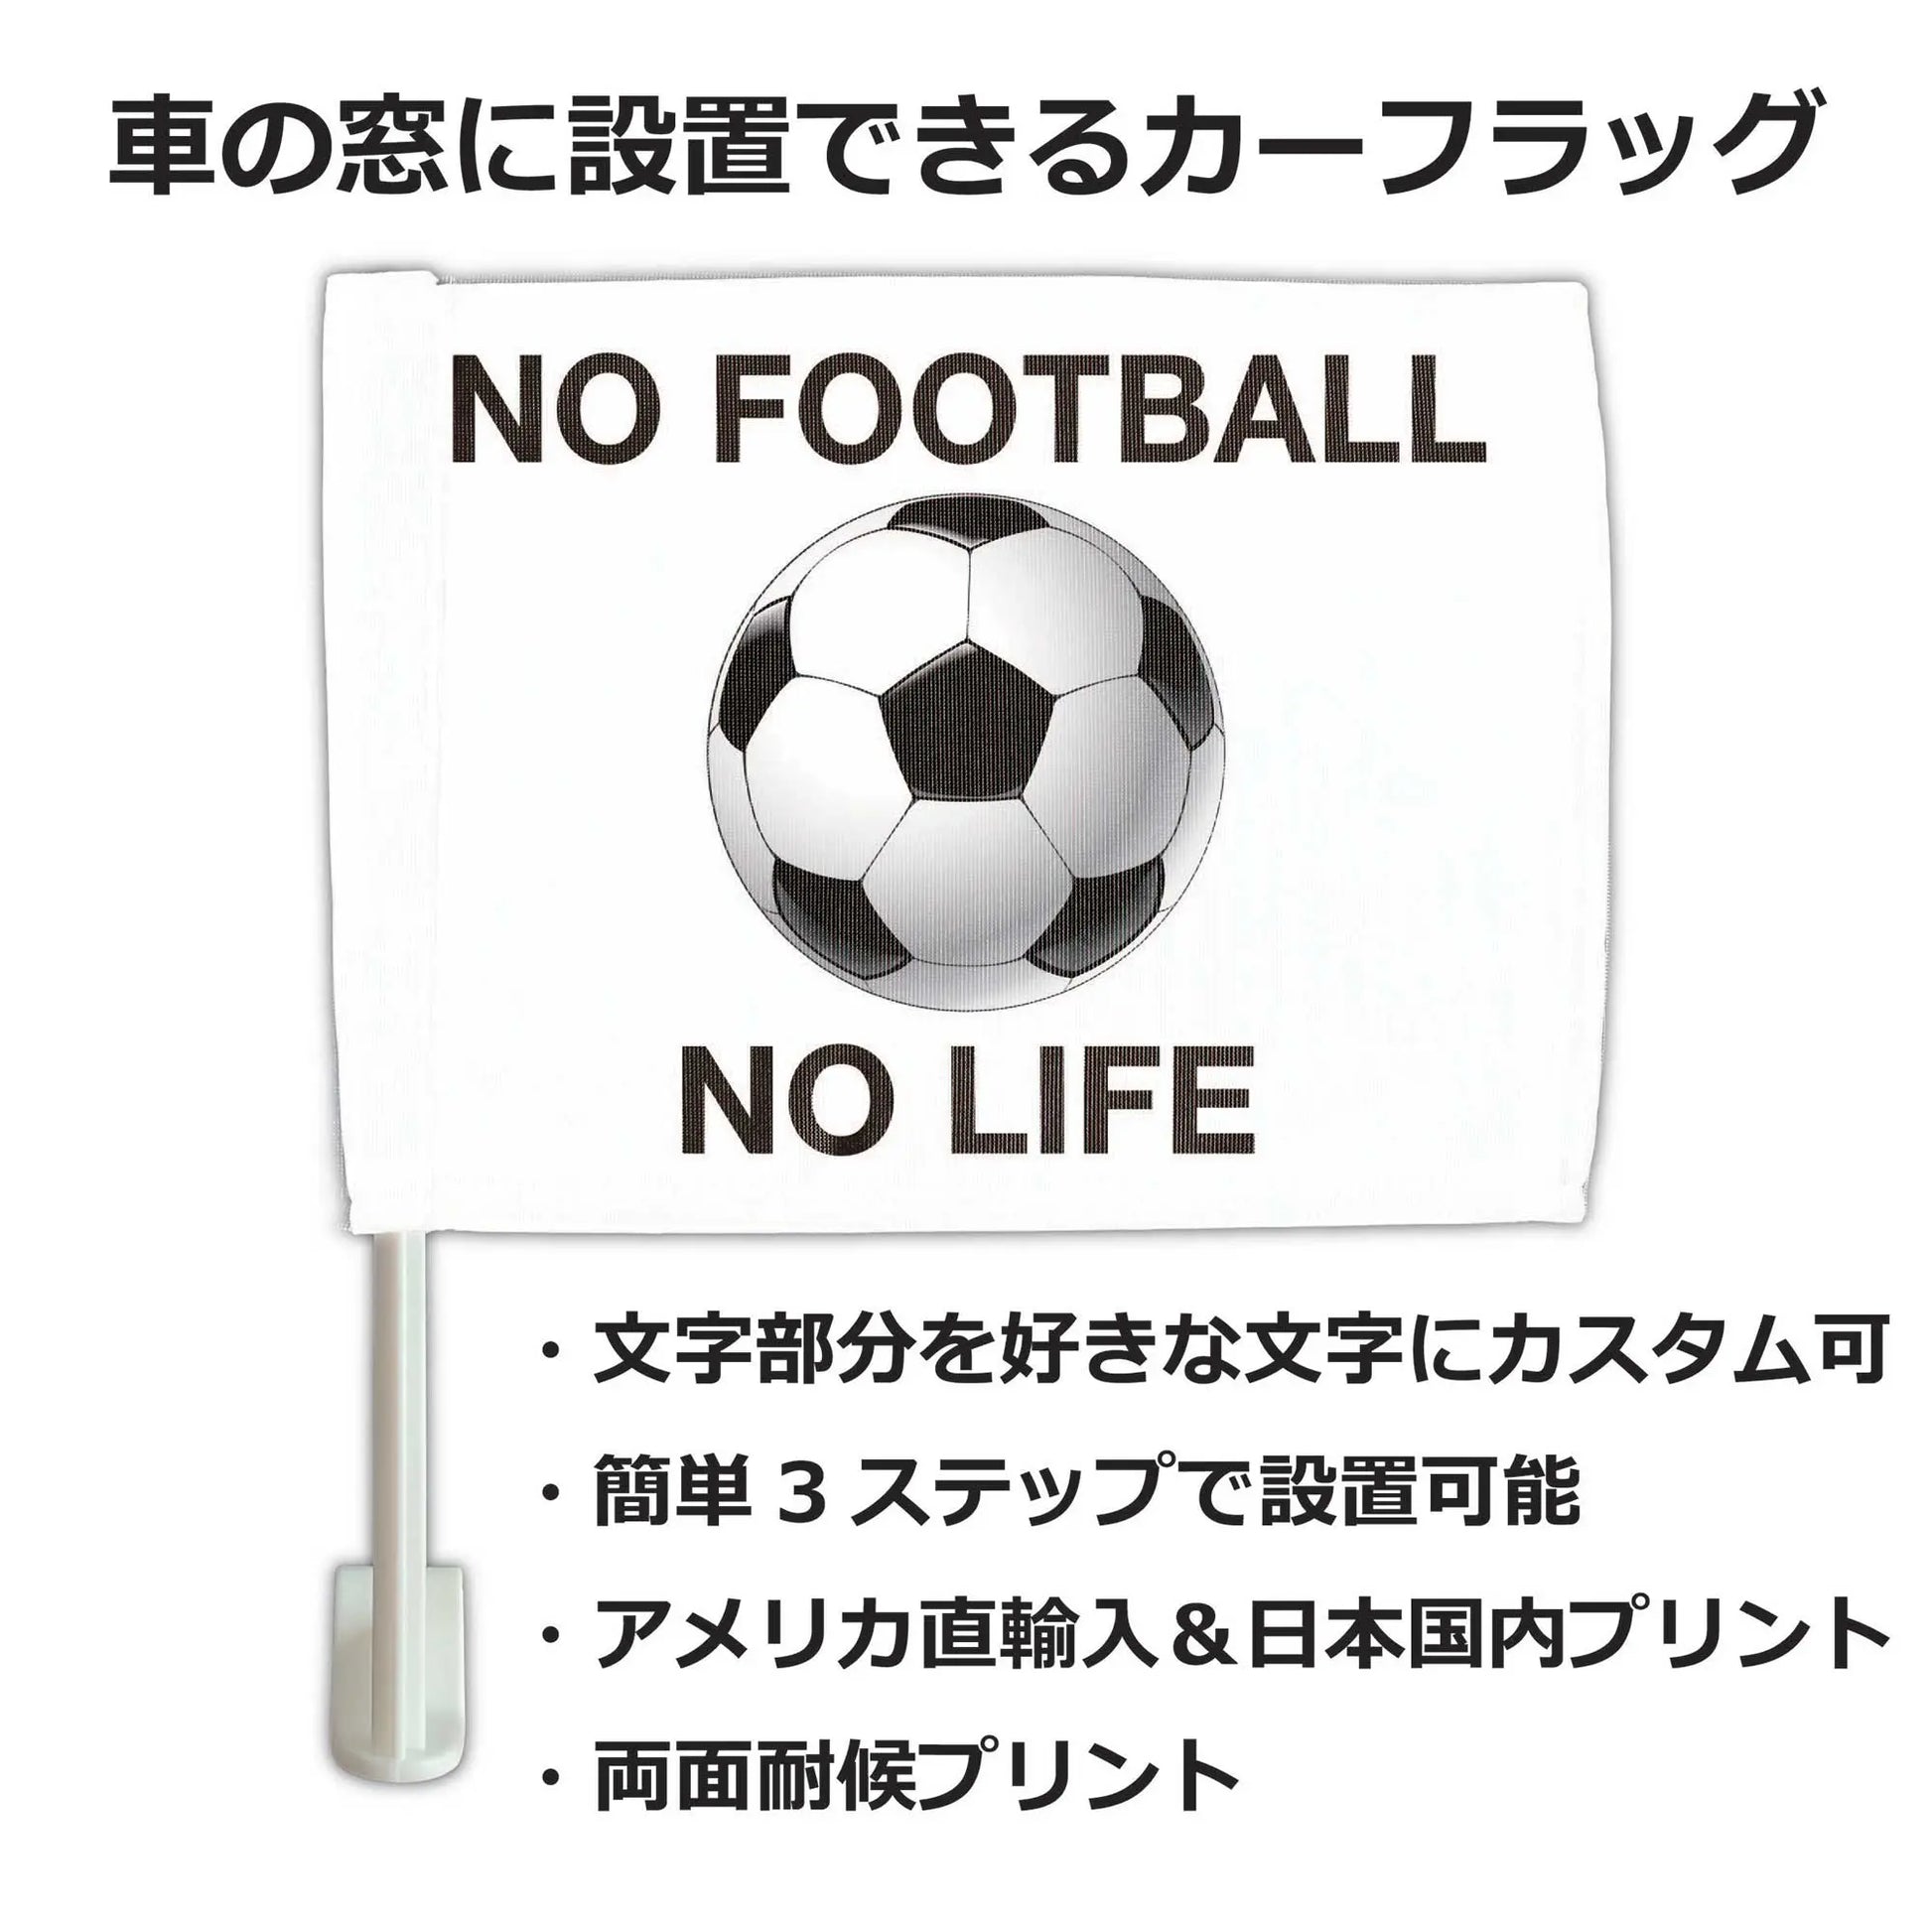 【カーフラッグ】FOOTBALL/サッカー・フットボール/自動車用オリジナルフラッグ・旗 PL8HERO